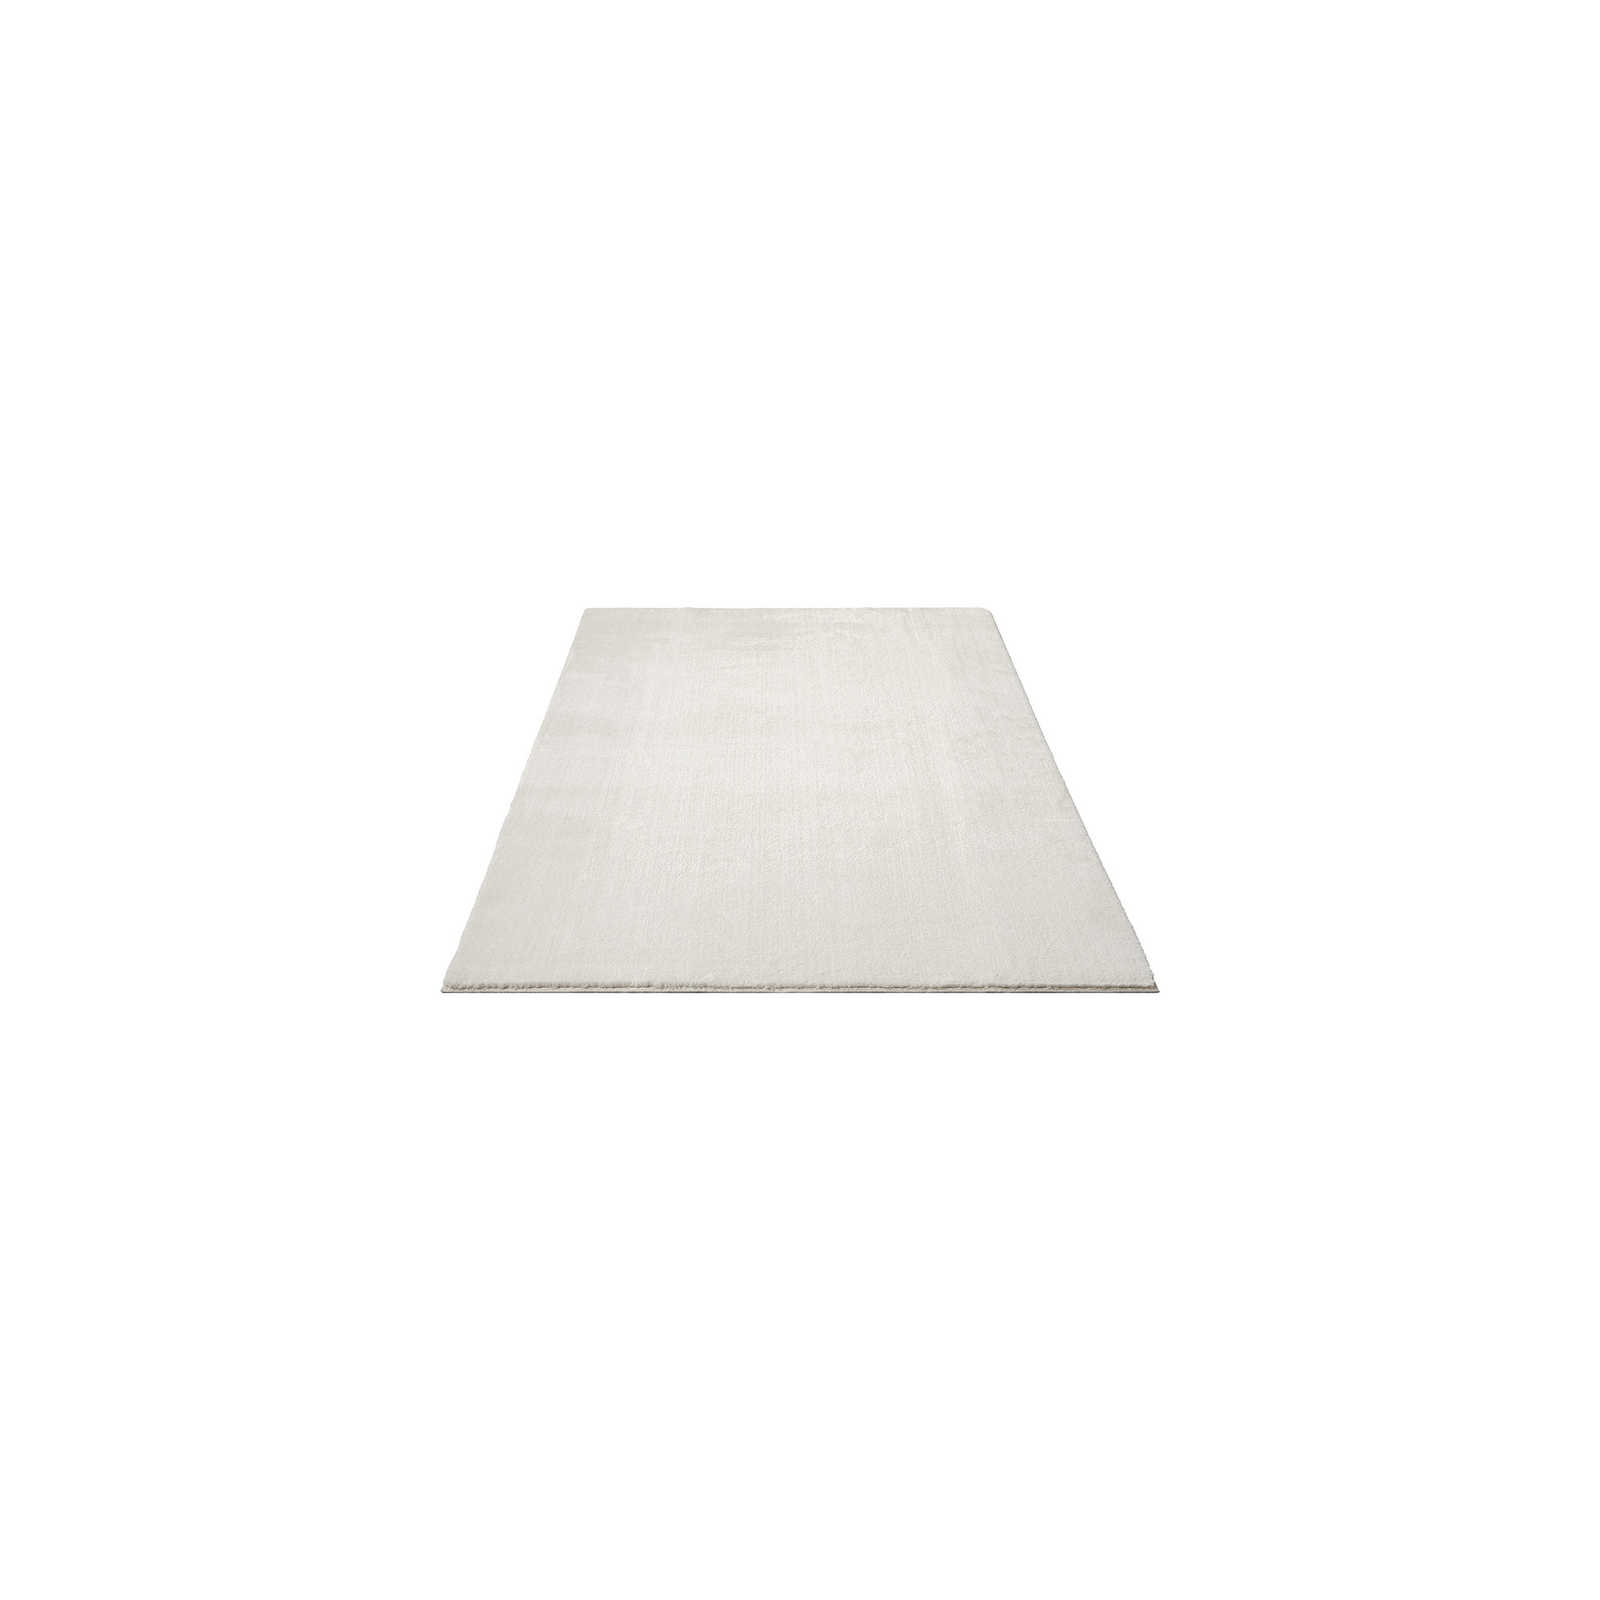 Fashionable high pile carpet in cream - 150 x 80 cm
